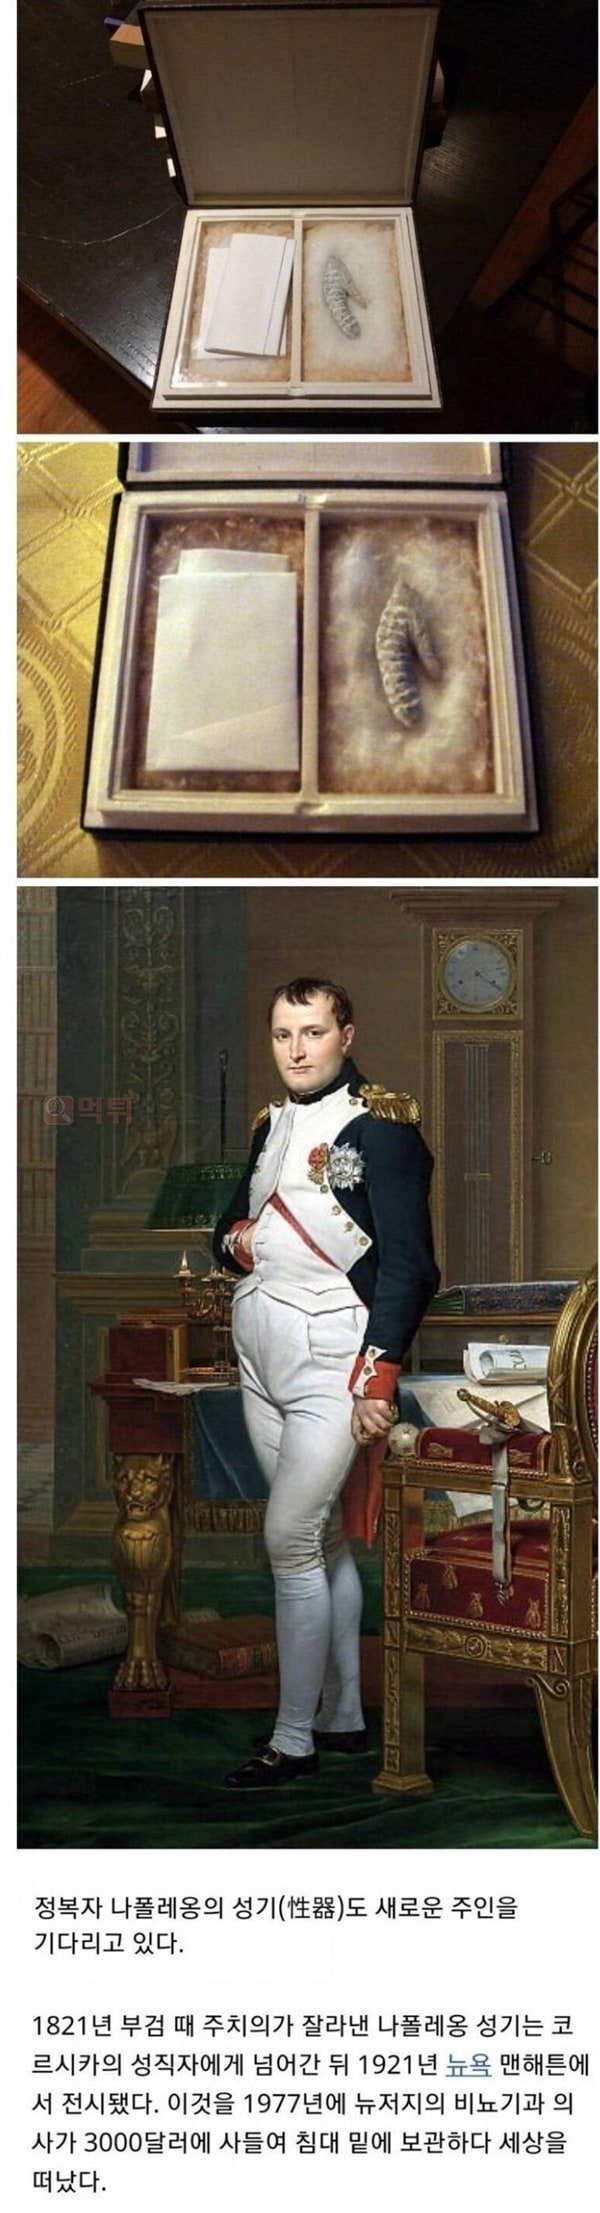 먹튀검증소 유머 나폴레옹의 유물